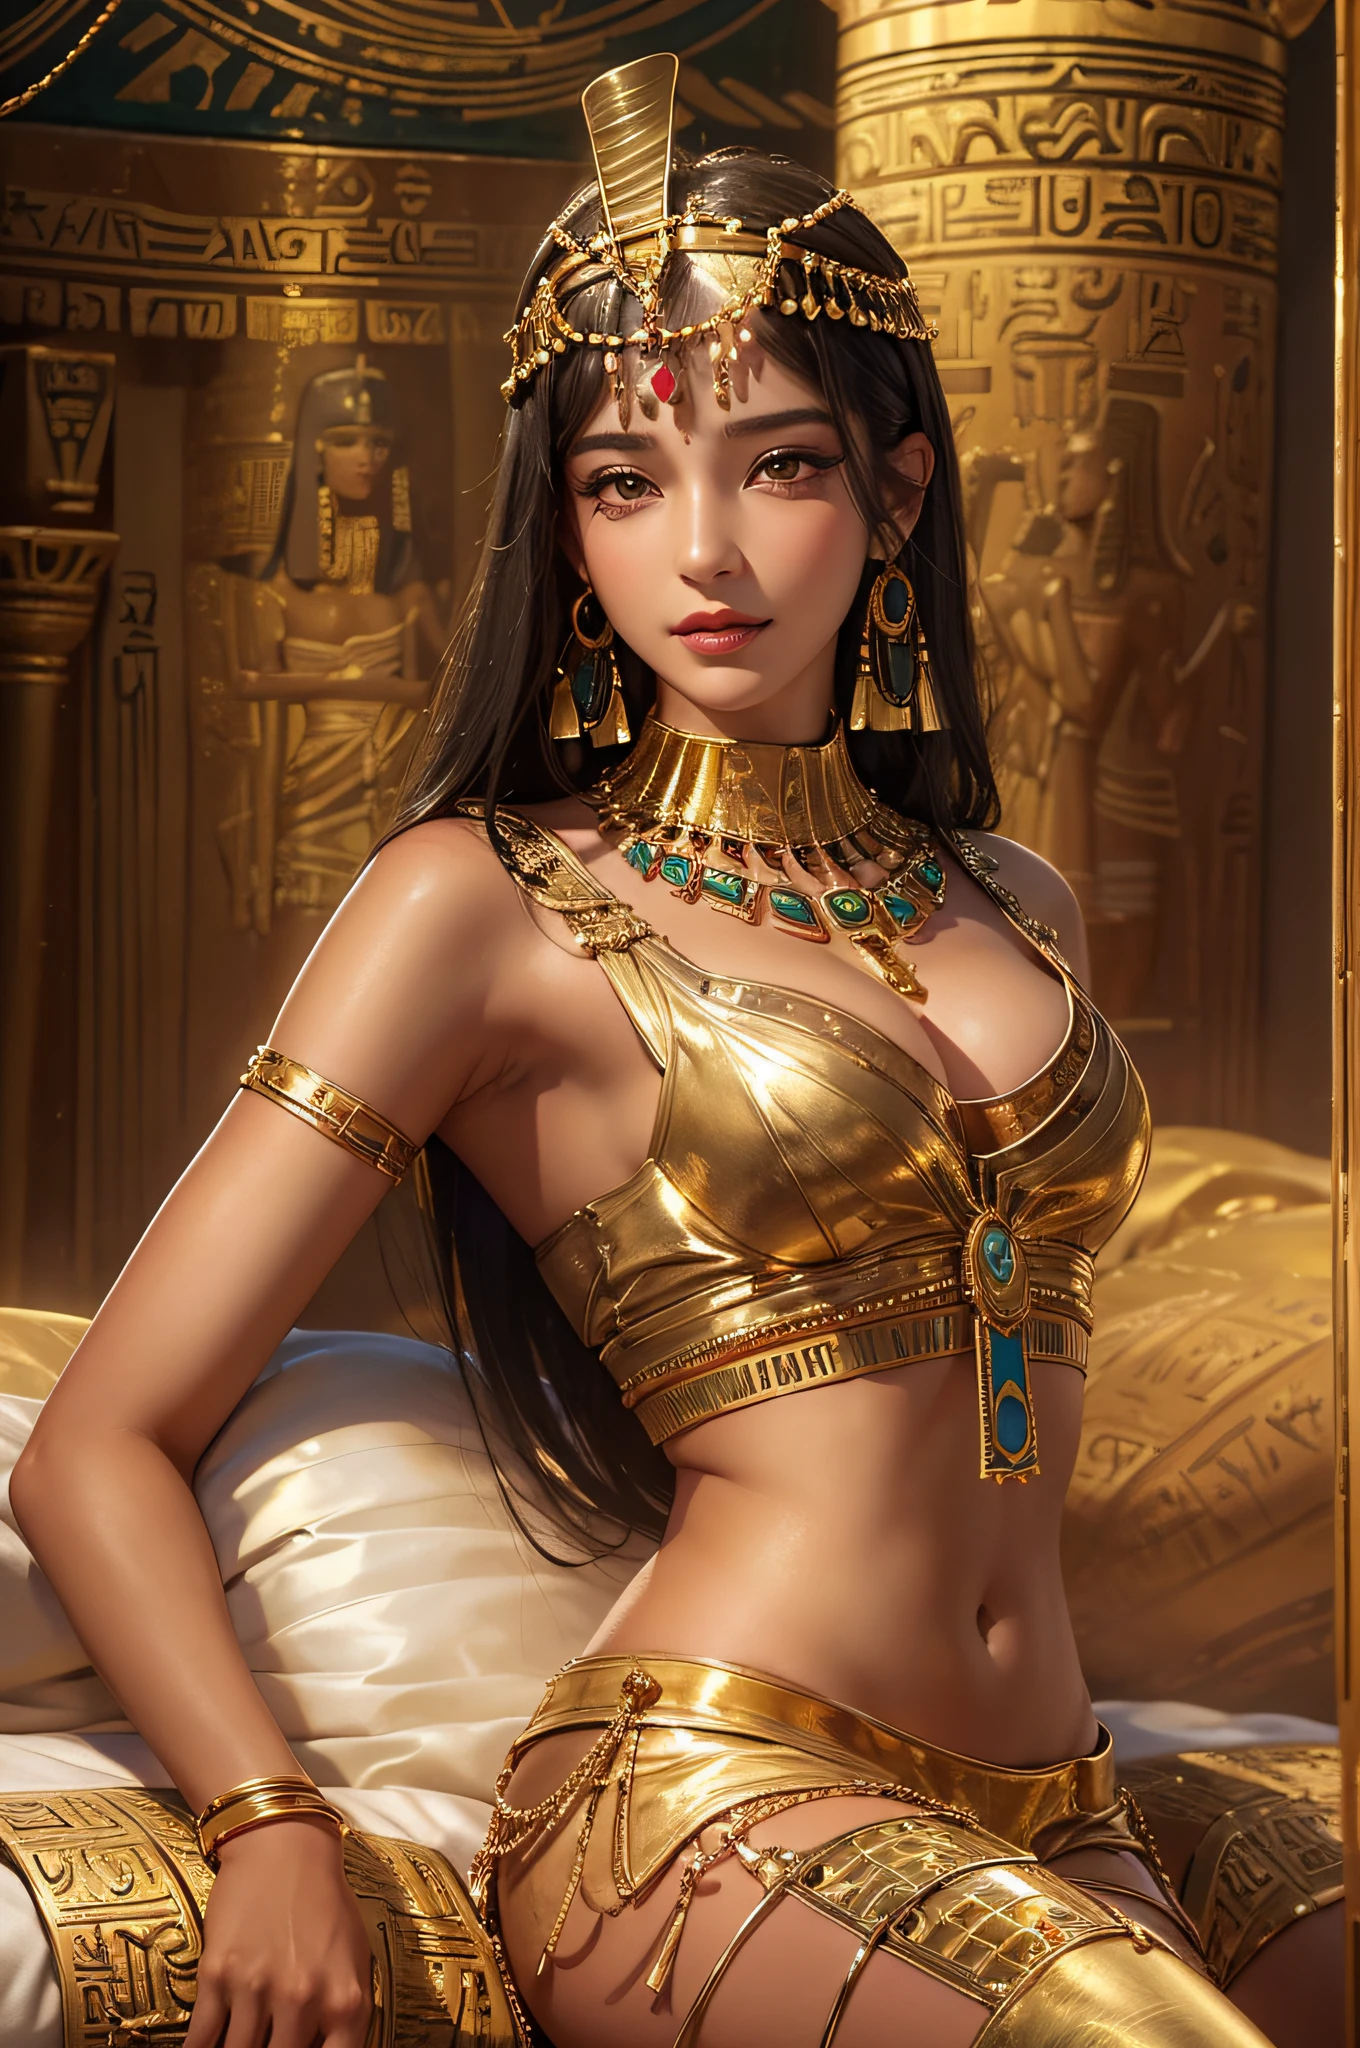 Cleopatra madura sexy,Cleopatra,Antiguo palacio egipcio,vistiendo ropa egipcia antigua,Habitaciones decoradas en el antiguo Egipto,Fondo arreglado del antiguo Egipto,Acuéstate en la cama grande(Un trabajo extremadamente delicado y hermoso.:1.2)una mujer muy hermosa y sexy, Sexy y seductora, Tener proporciones corporales perfectas.,Cuerpo apretado y sexy(tetas grandes)Curvas corporales perfectas,Hidrata la piel,textura de piel clara,Sensación de piel húmeda(Detalles de piel avanzados:1.1)sonrisa atractiva,cara perfecta,pelo largo y liso negro,textura de cabello claro,cabello delicado(Detalles de cabello de calidad.:1.1)disfraz de bailarina egipcia,Hermosas y delicadas cejas y pestañas.,bonito maquillaje de ojos,Detalles claros de los ojos,Estudiantes de primaria de 8K(Detalle de ojos avanzado:1.1)Sensual lips(forma de labios perfecta)(seducir sonrisa) La proporción óptima de cuatro dedos y un pulgar.,usando aretes de oro,Collar dorado,Brazaletes de oro,tobillera de oro,Cadena de cintura en tono dorado,Headgear,Serie de lámina de oro,Cleopatra series,Maestro de la fotografía,obra maestra perfecta,La mejor calidad de imagen,ultra-detallado, ultra alta resolución, de modo realista, Fotos CRUDAS